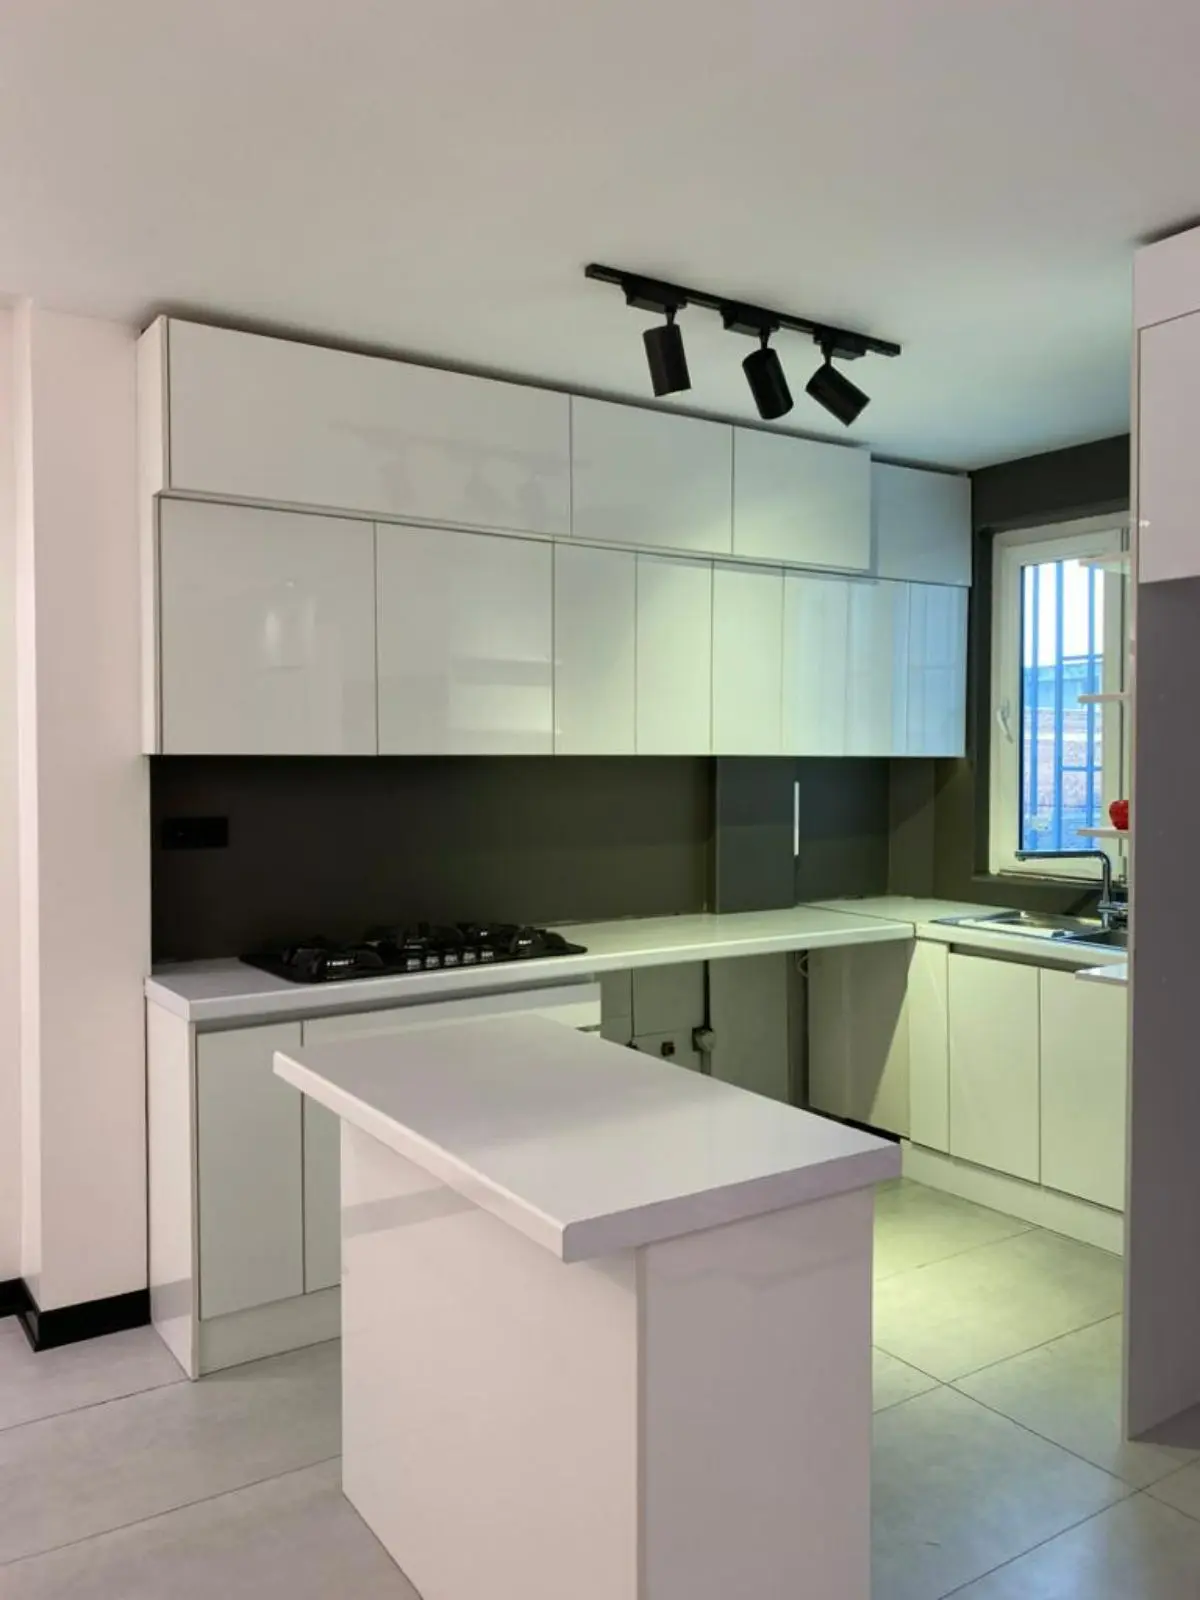 کابینت مدرن سفید آشپزخانه با بین کابینتی طوسی